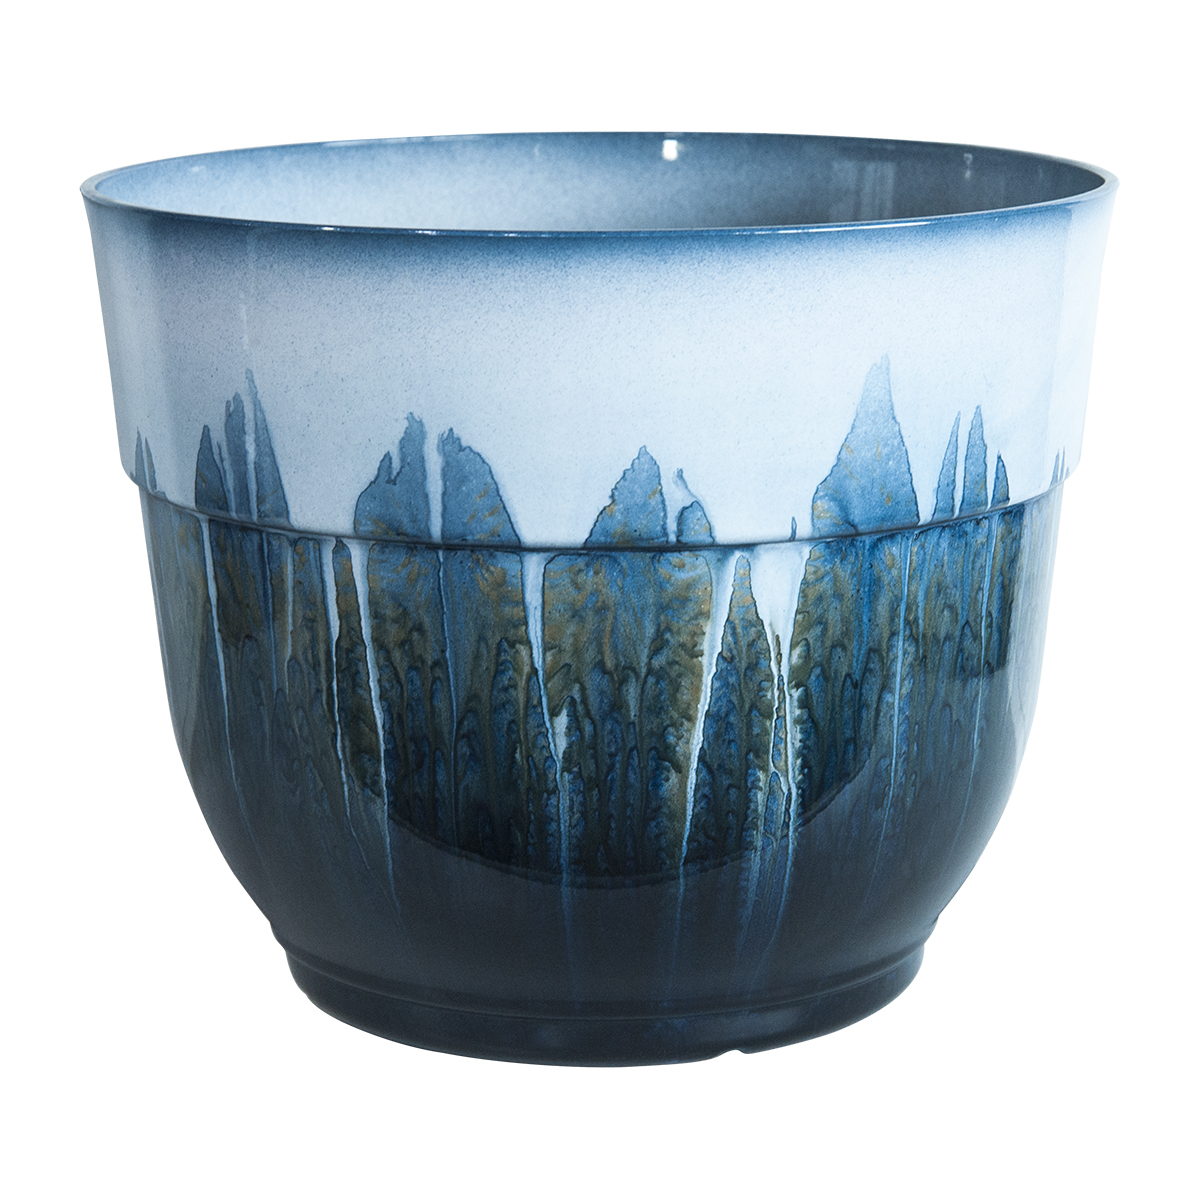 Lightweight Ceramic look plastic plant pot